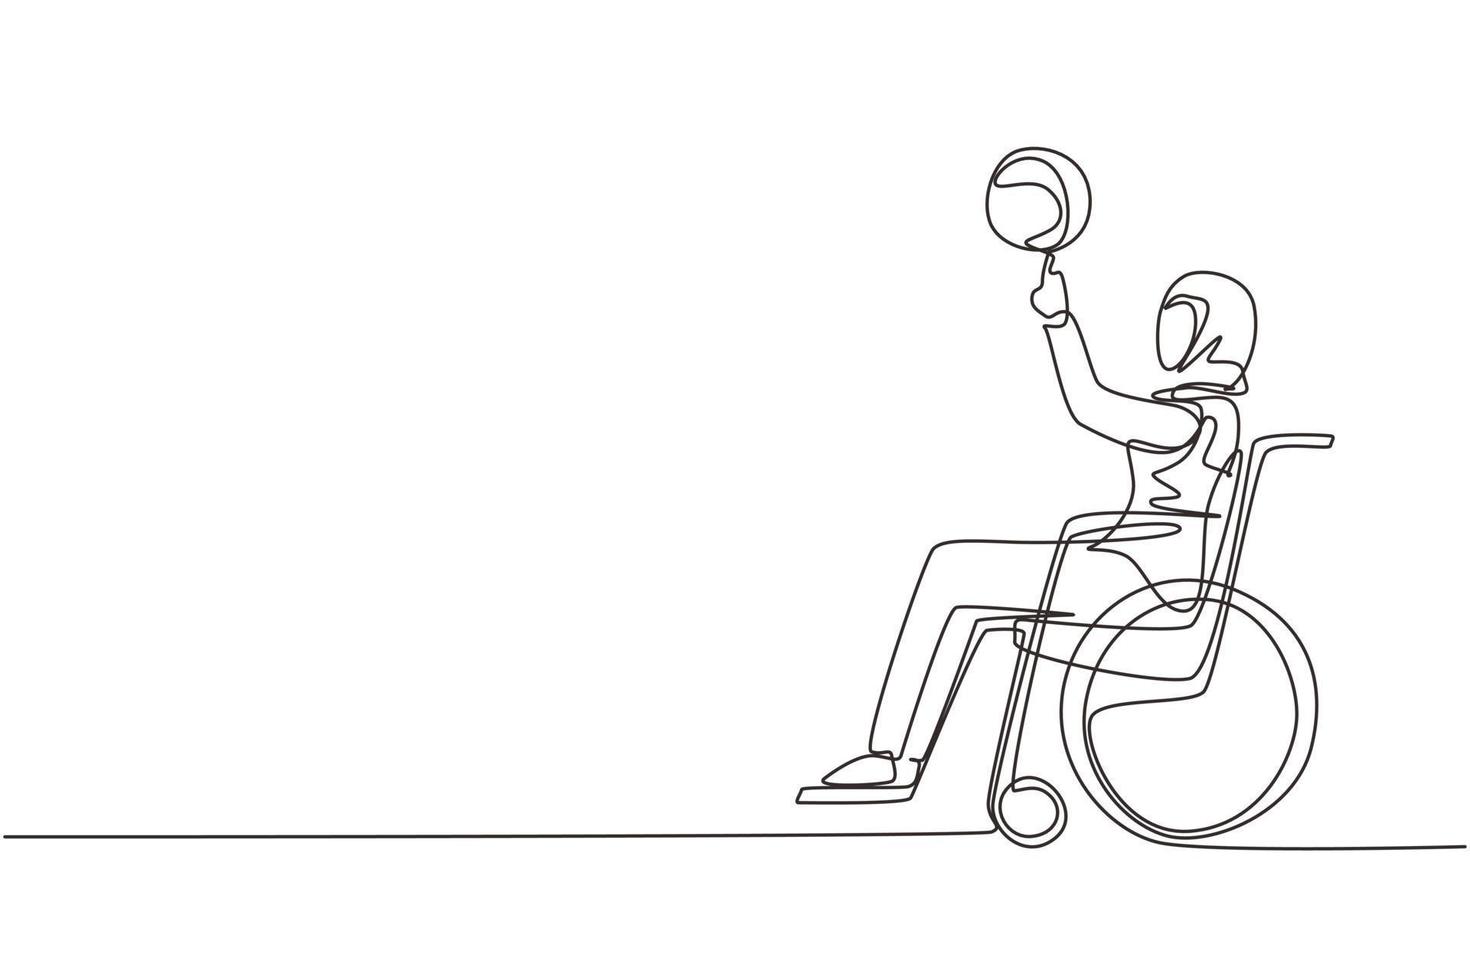 une ligne continue dessinant une fille arabe en fauteuil roulant joue au basket. personne handicapée fait tourner le basket-ball sur son doigt. exercice pour les personnes handicapées. illustration vectorielle de dessin à une seule ligne vecteur